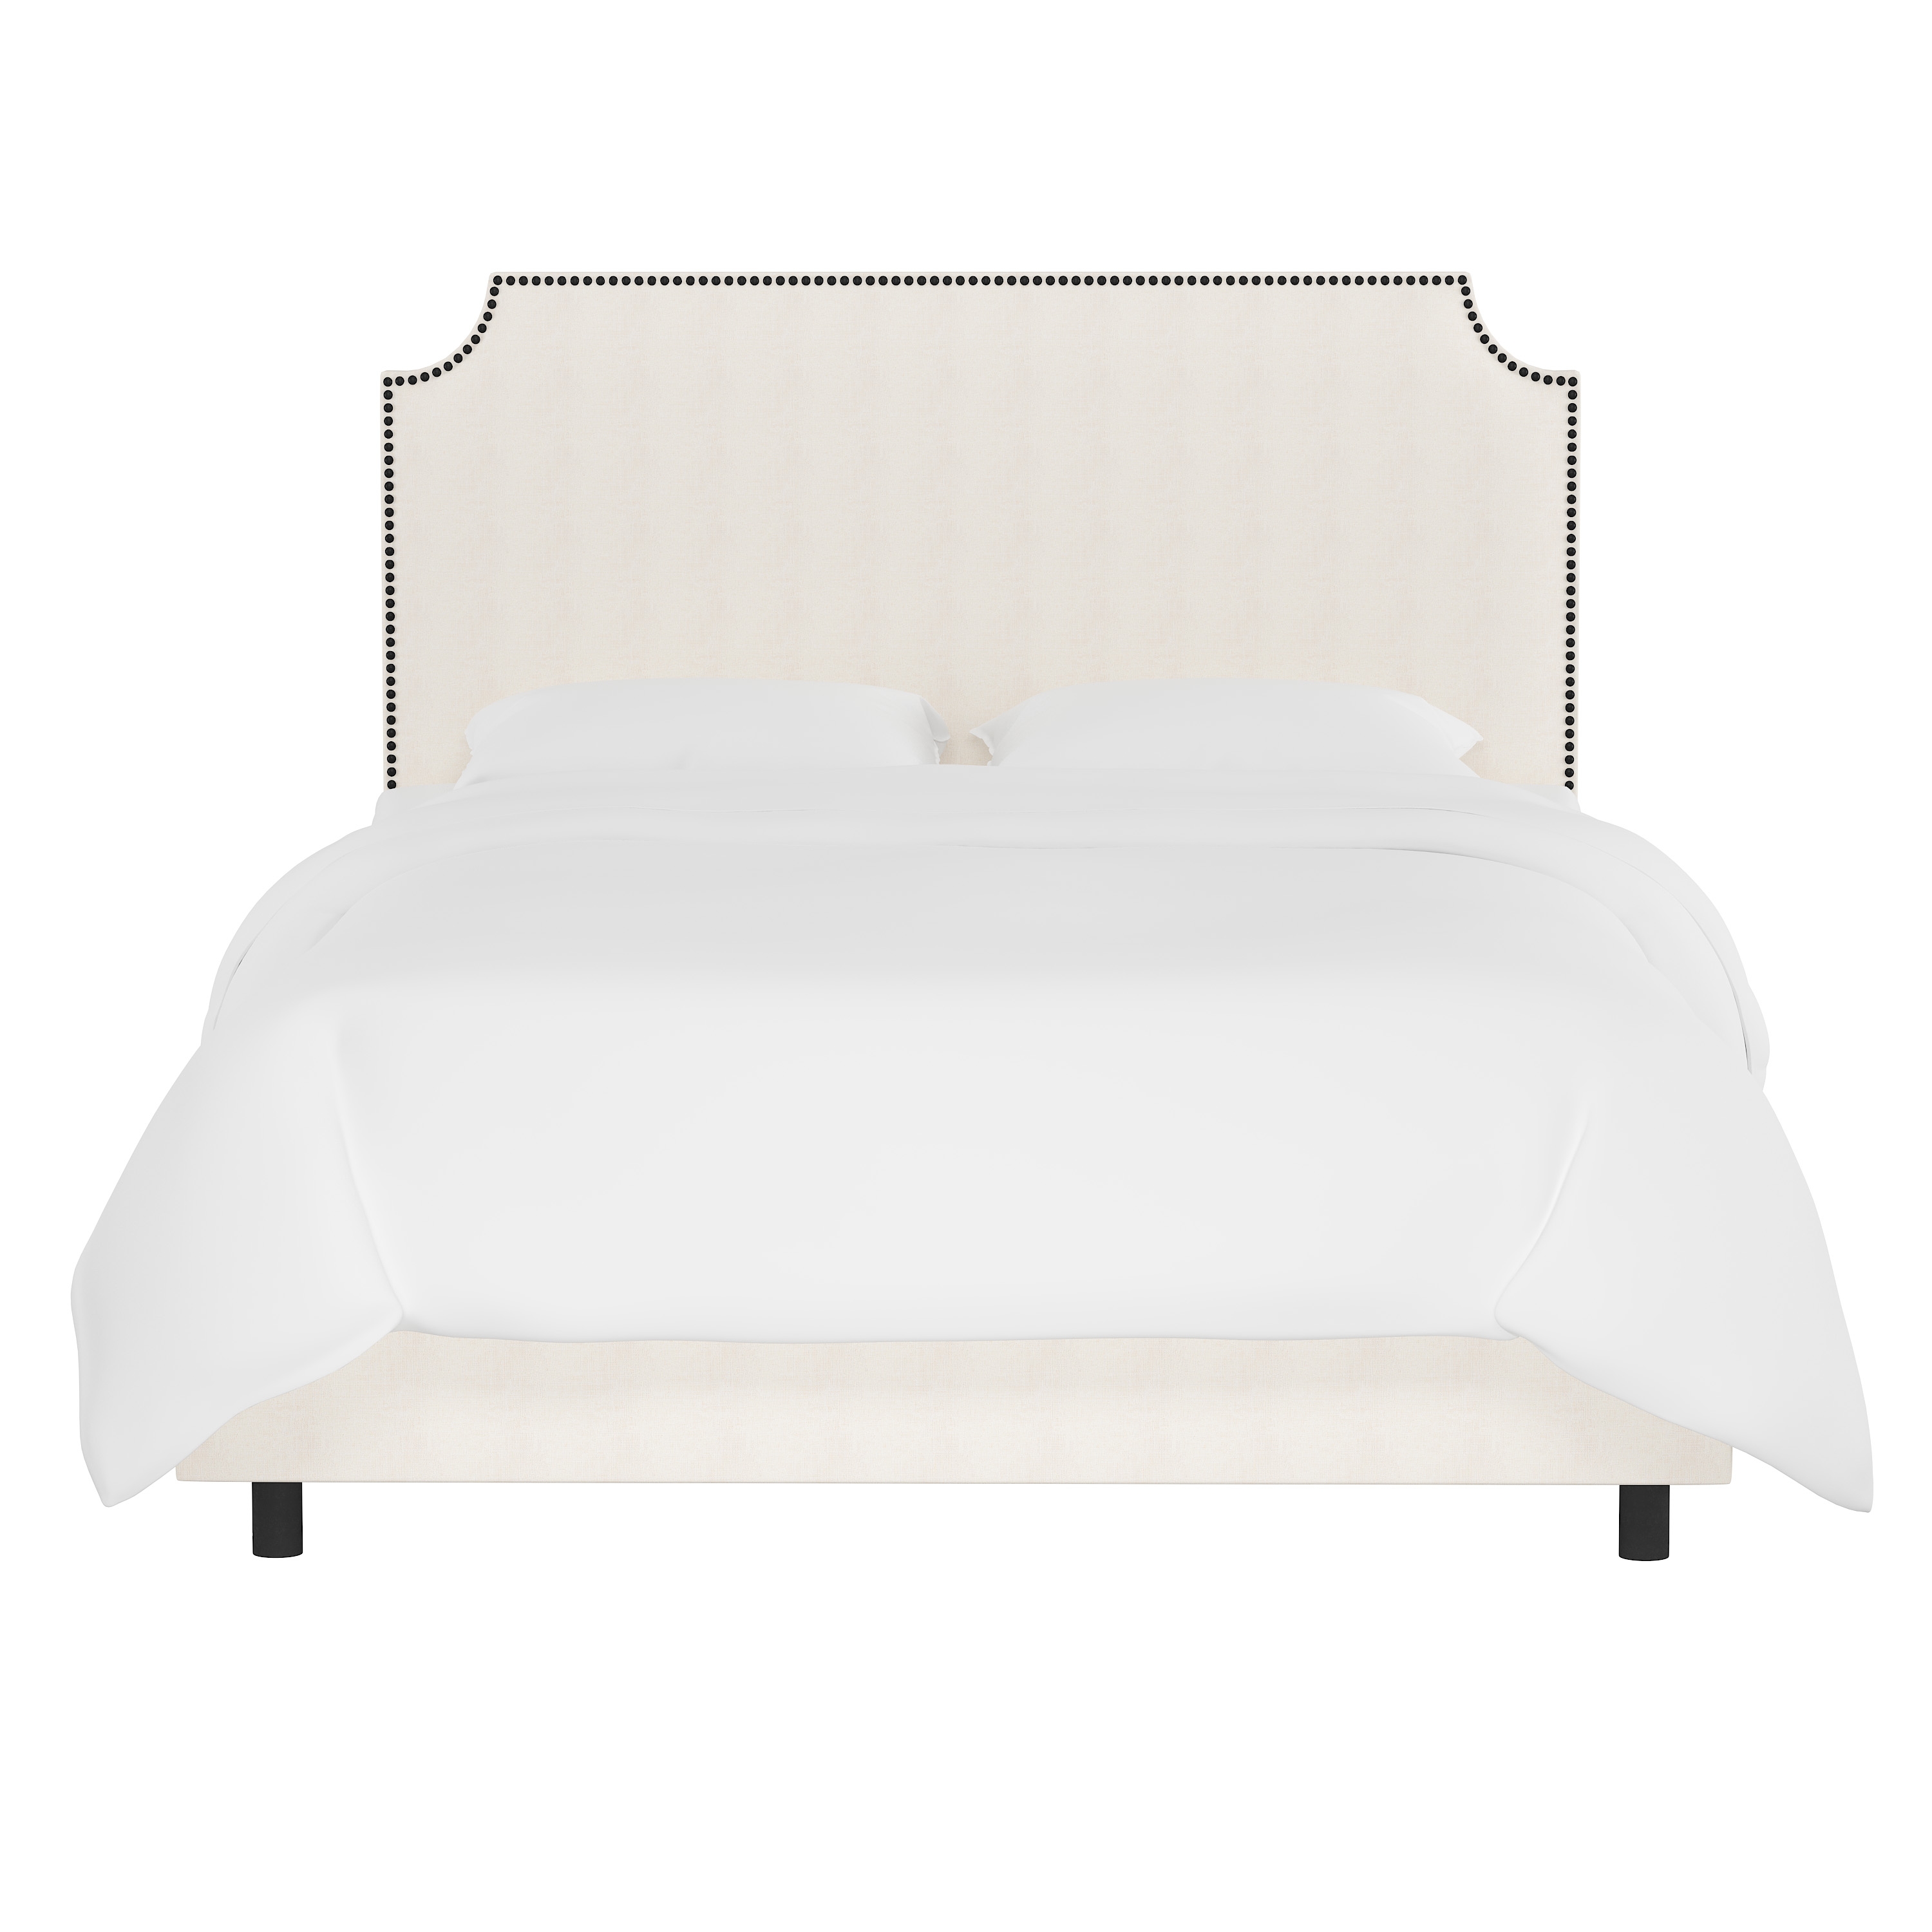 Hudson Bed, Full, White, Black Nailheads - Image 1